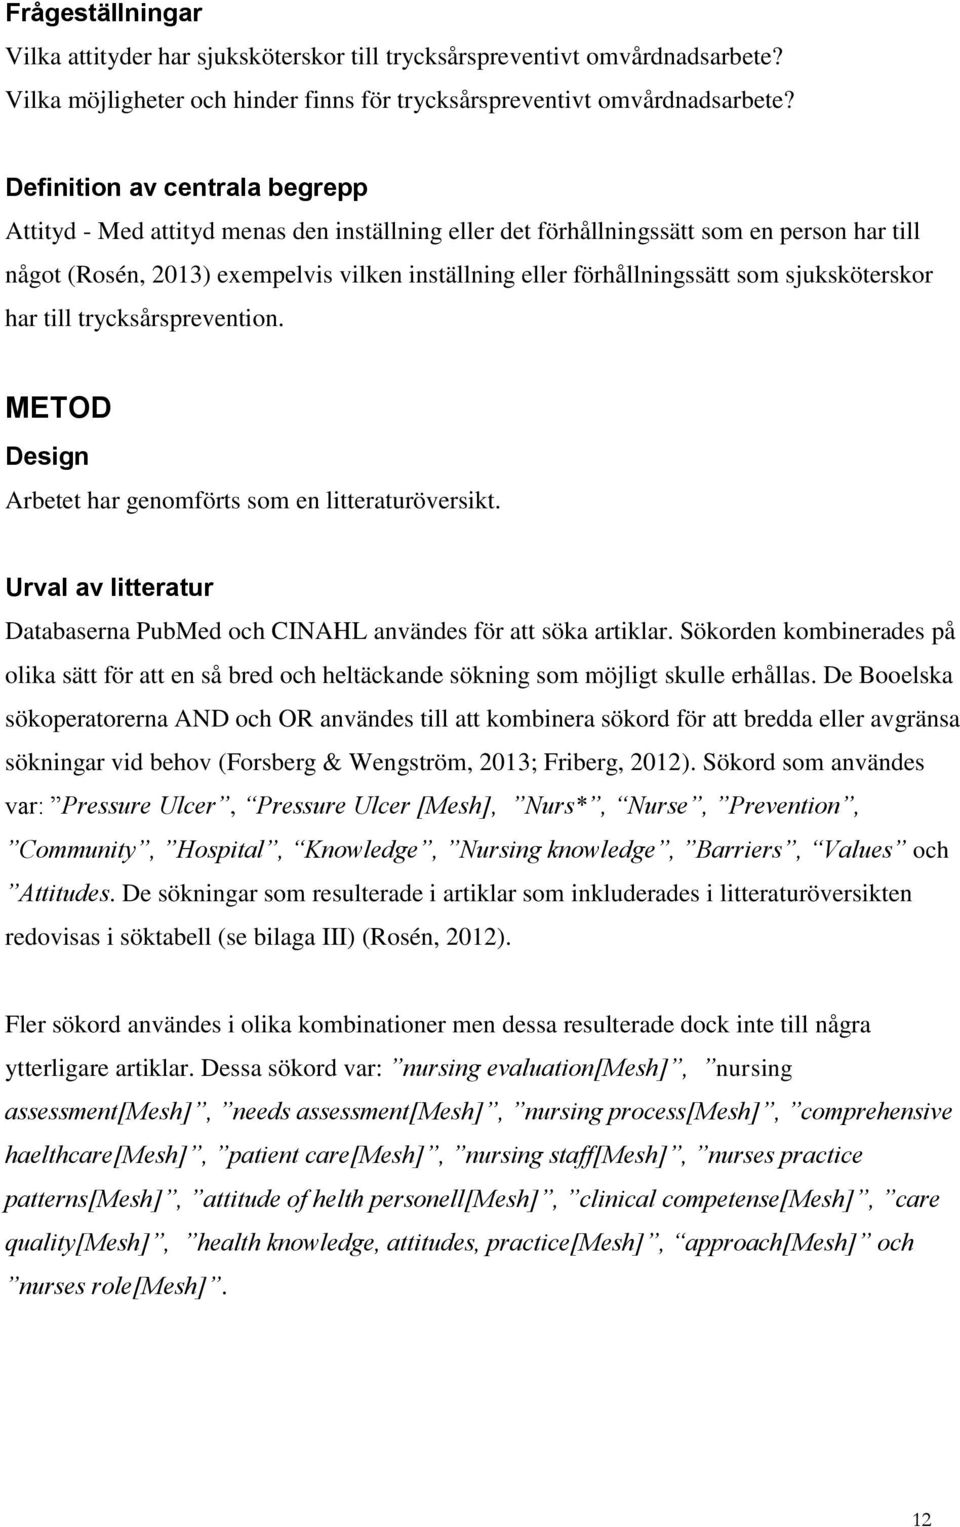 som sjuksköterskor har till ion. METOD Design Arbetet har genomförts som en litteraturöversikt. Urval av litteratur Databaserna PubMed och CINAHL användes för att söka artiklar.